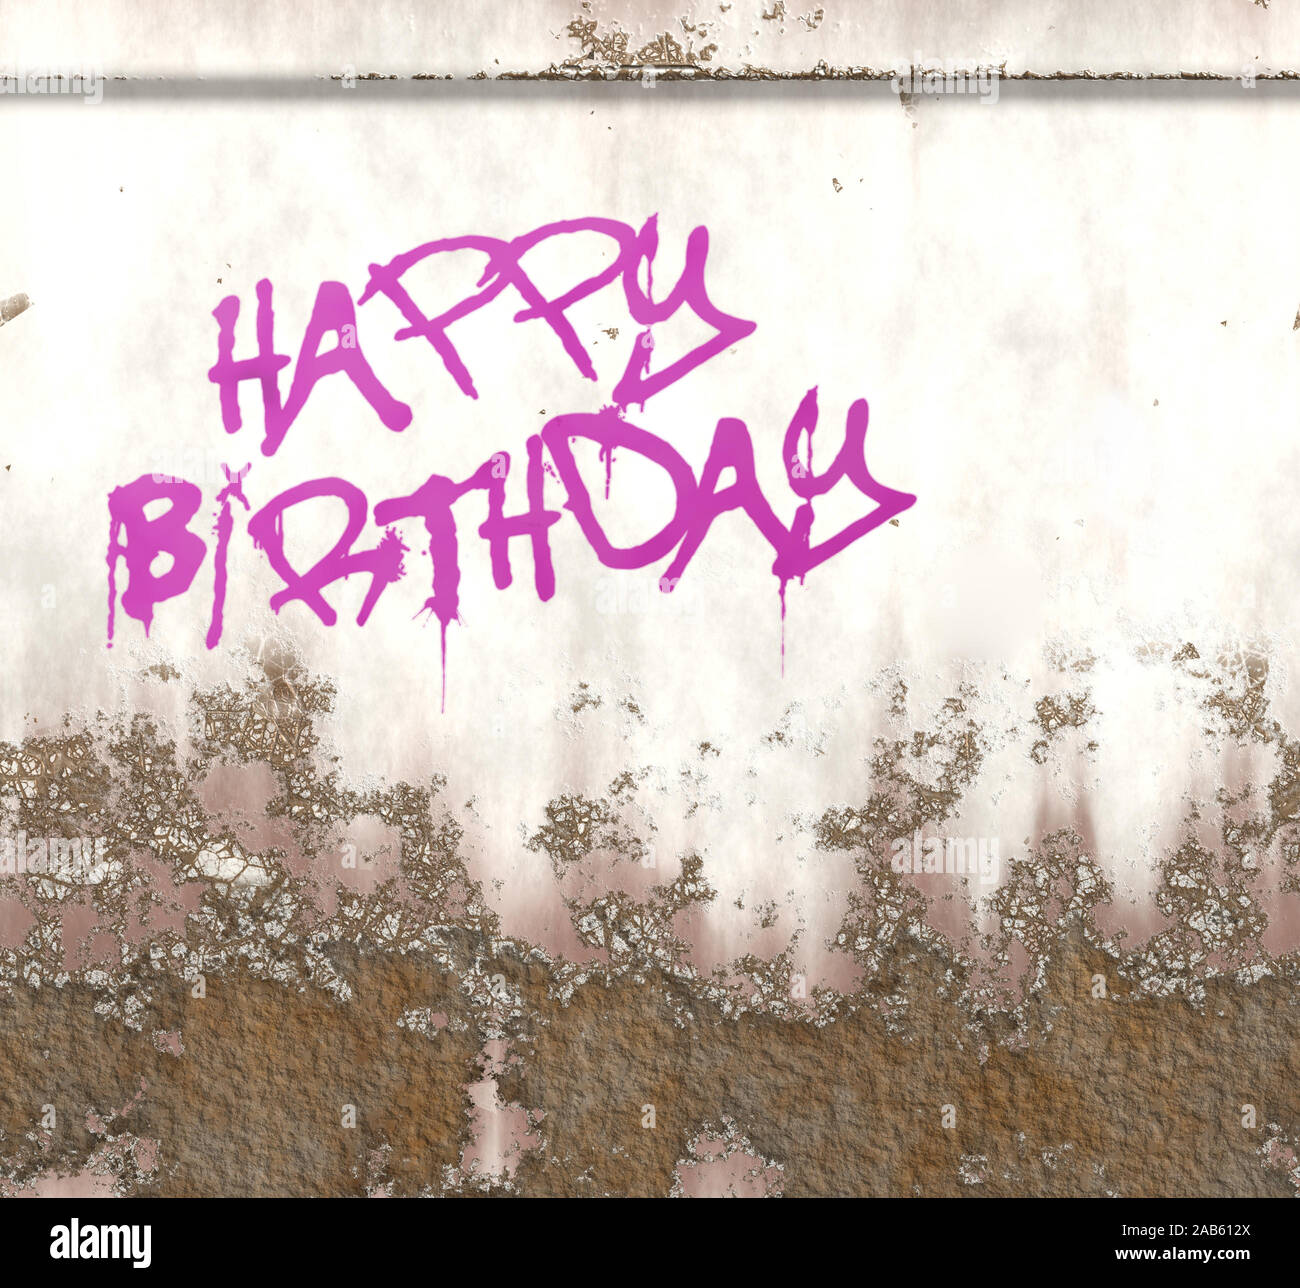 Ein Beispiel für eine Happy birthday Graffiti auf eine rostige Metallplatte Stockfoto